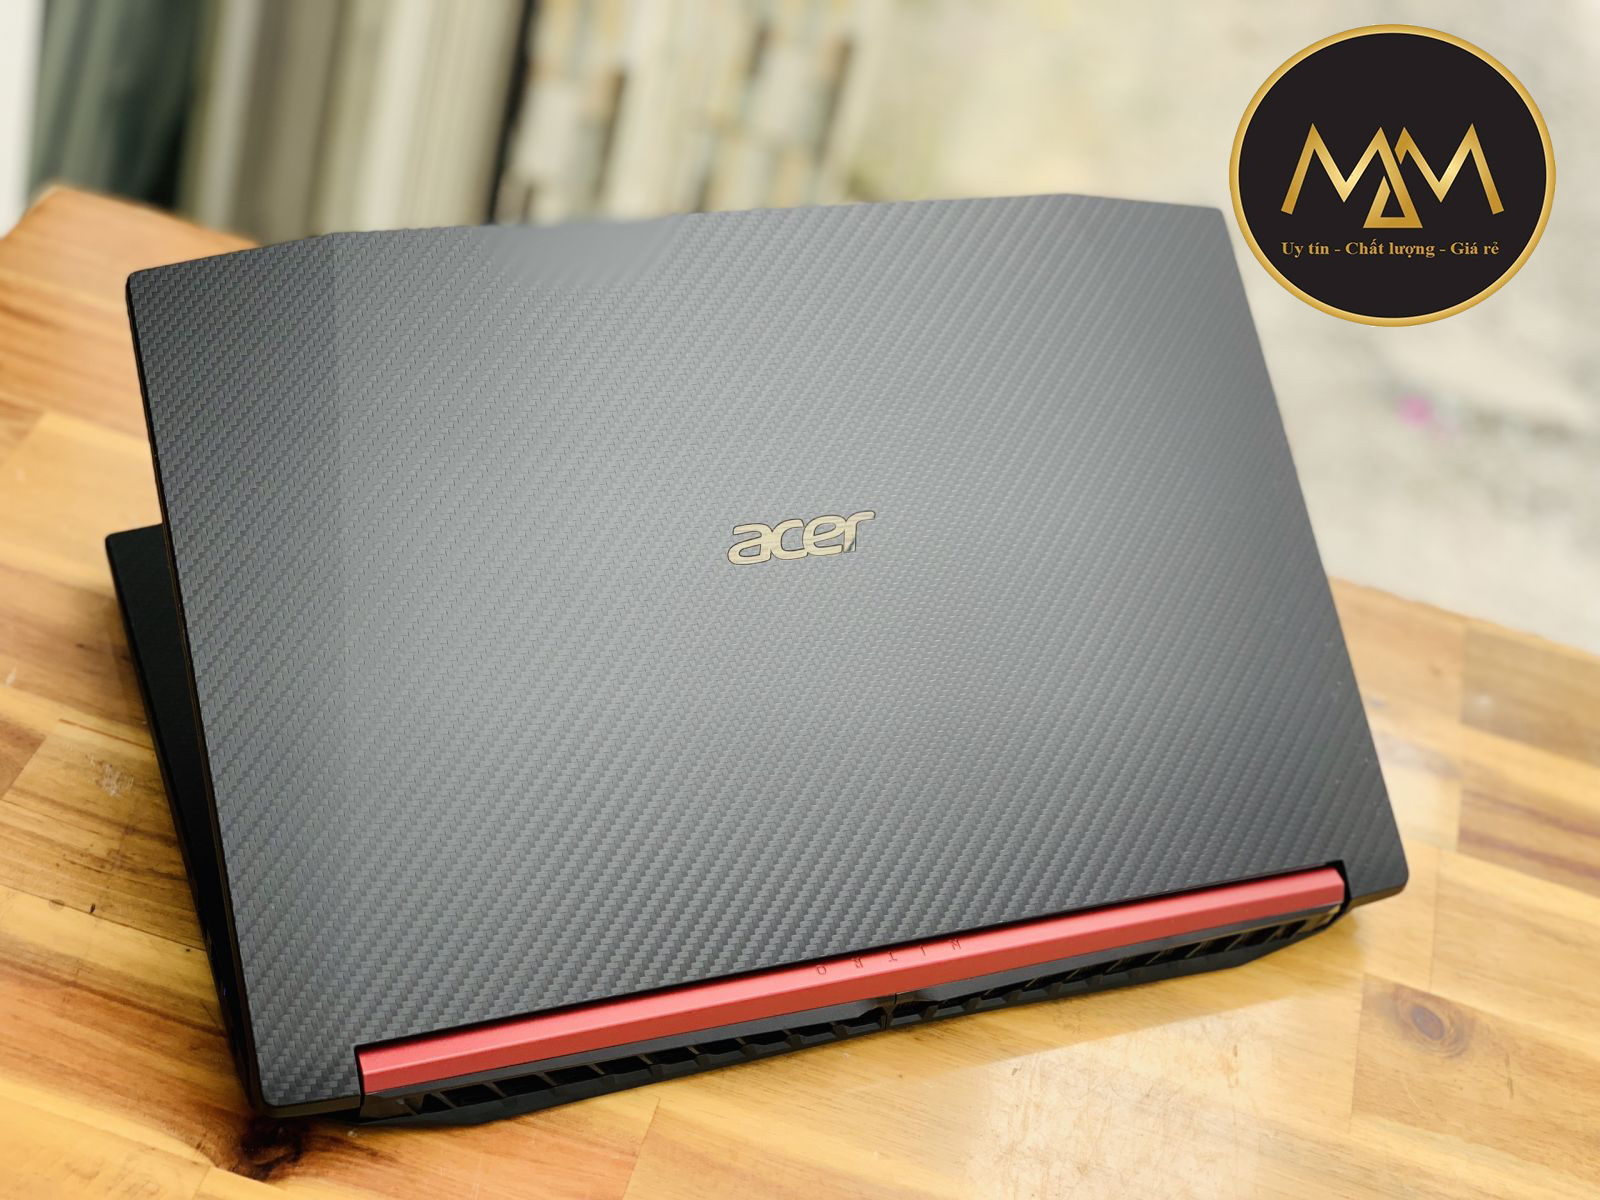 Laptop Gaming Acer Nitro 5 AN515-52 i5 8300H/ 8G/ SSD128+1000G/ GTX1050TI 4G/ Full HD/ LED ĐỎ/ Chuyên Game1